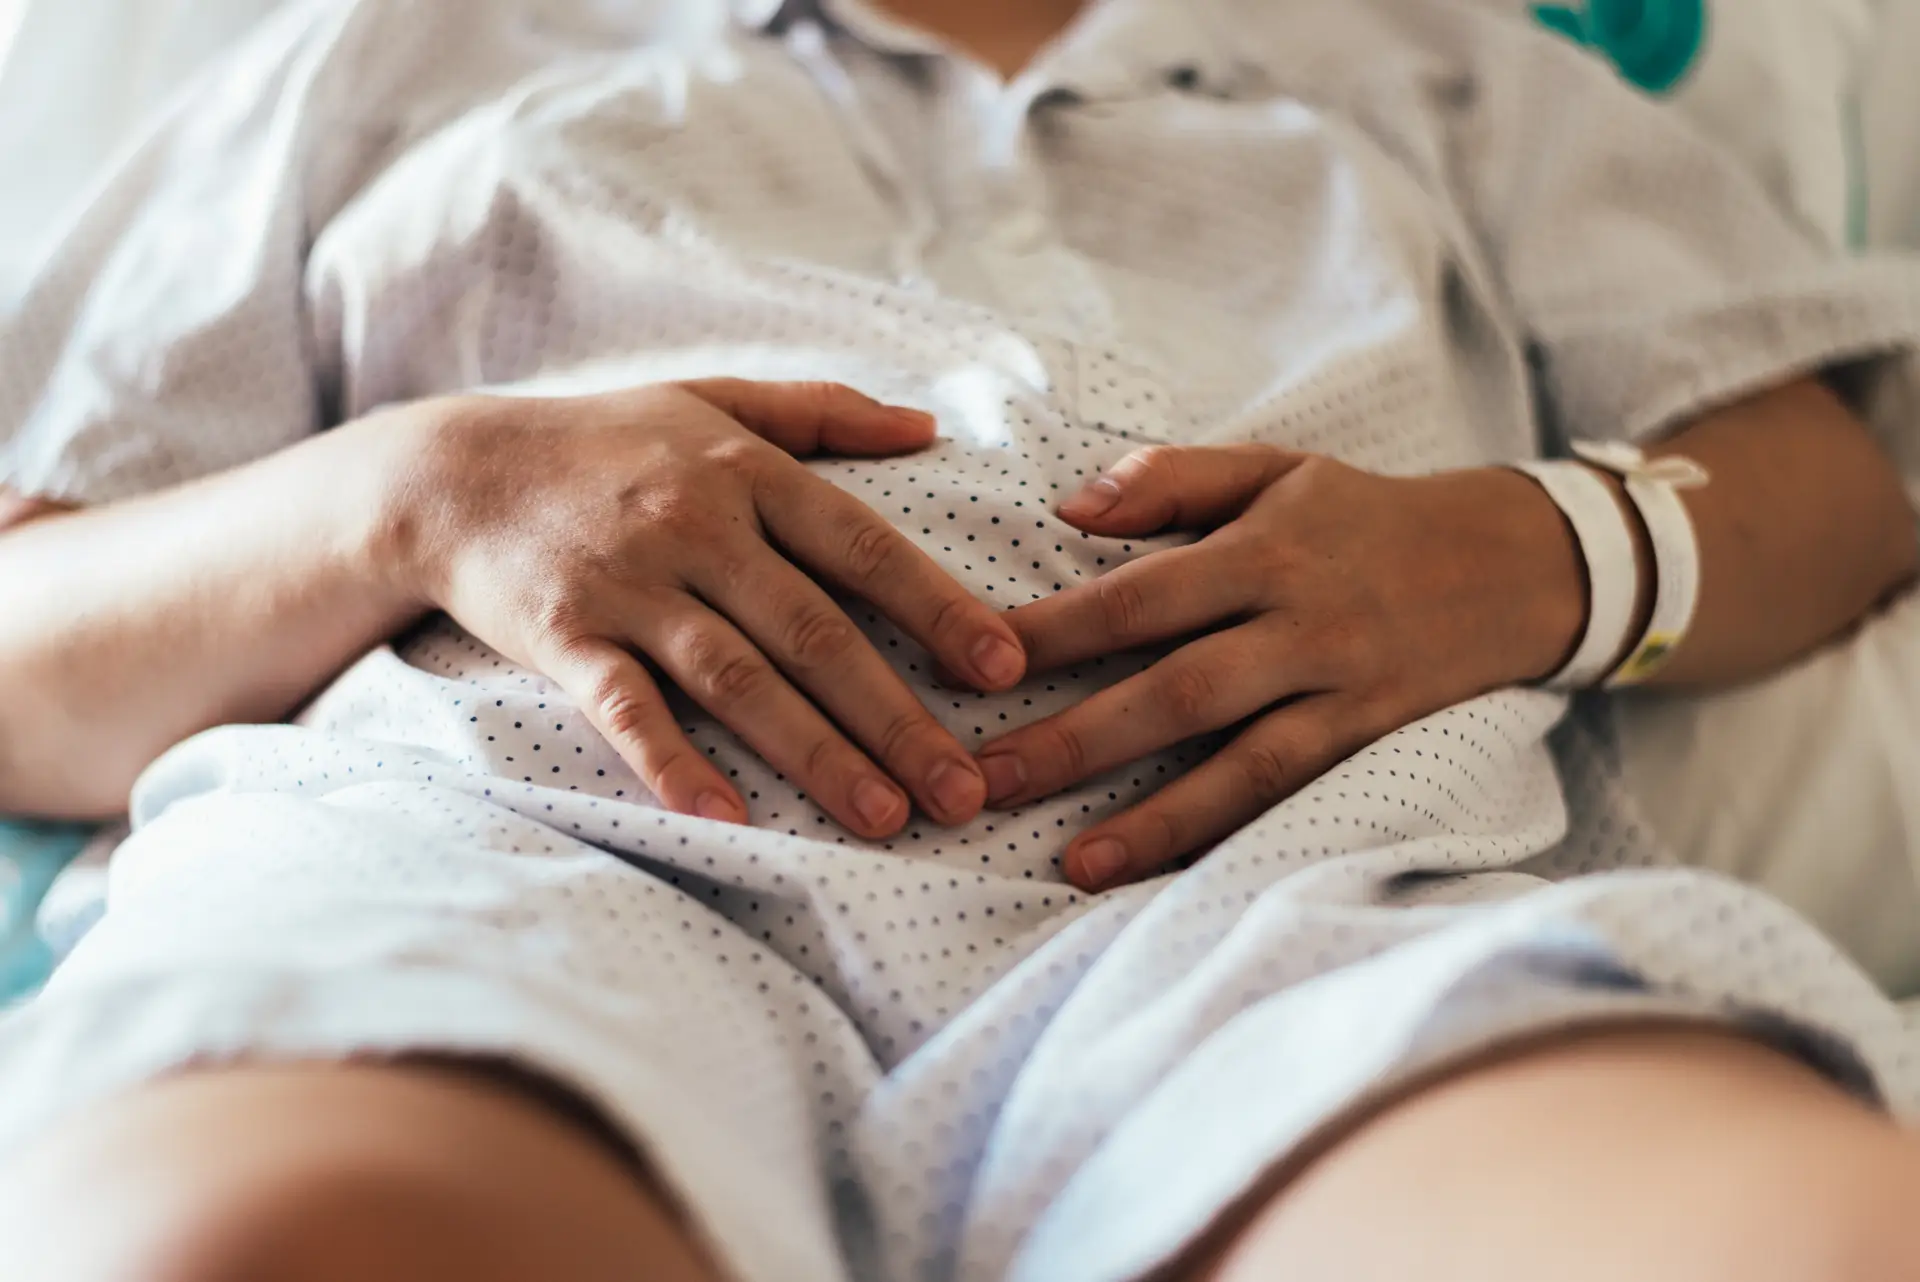 Problemas nos serviços de obstetrícia começam a afetar mortalidade materna